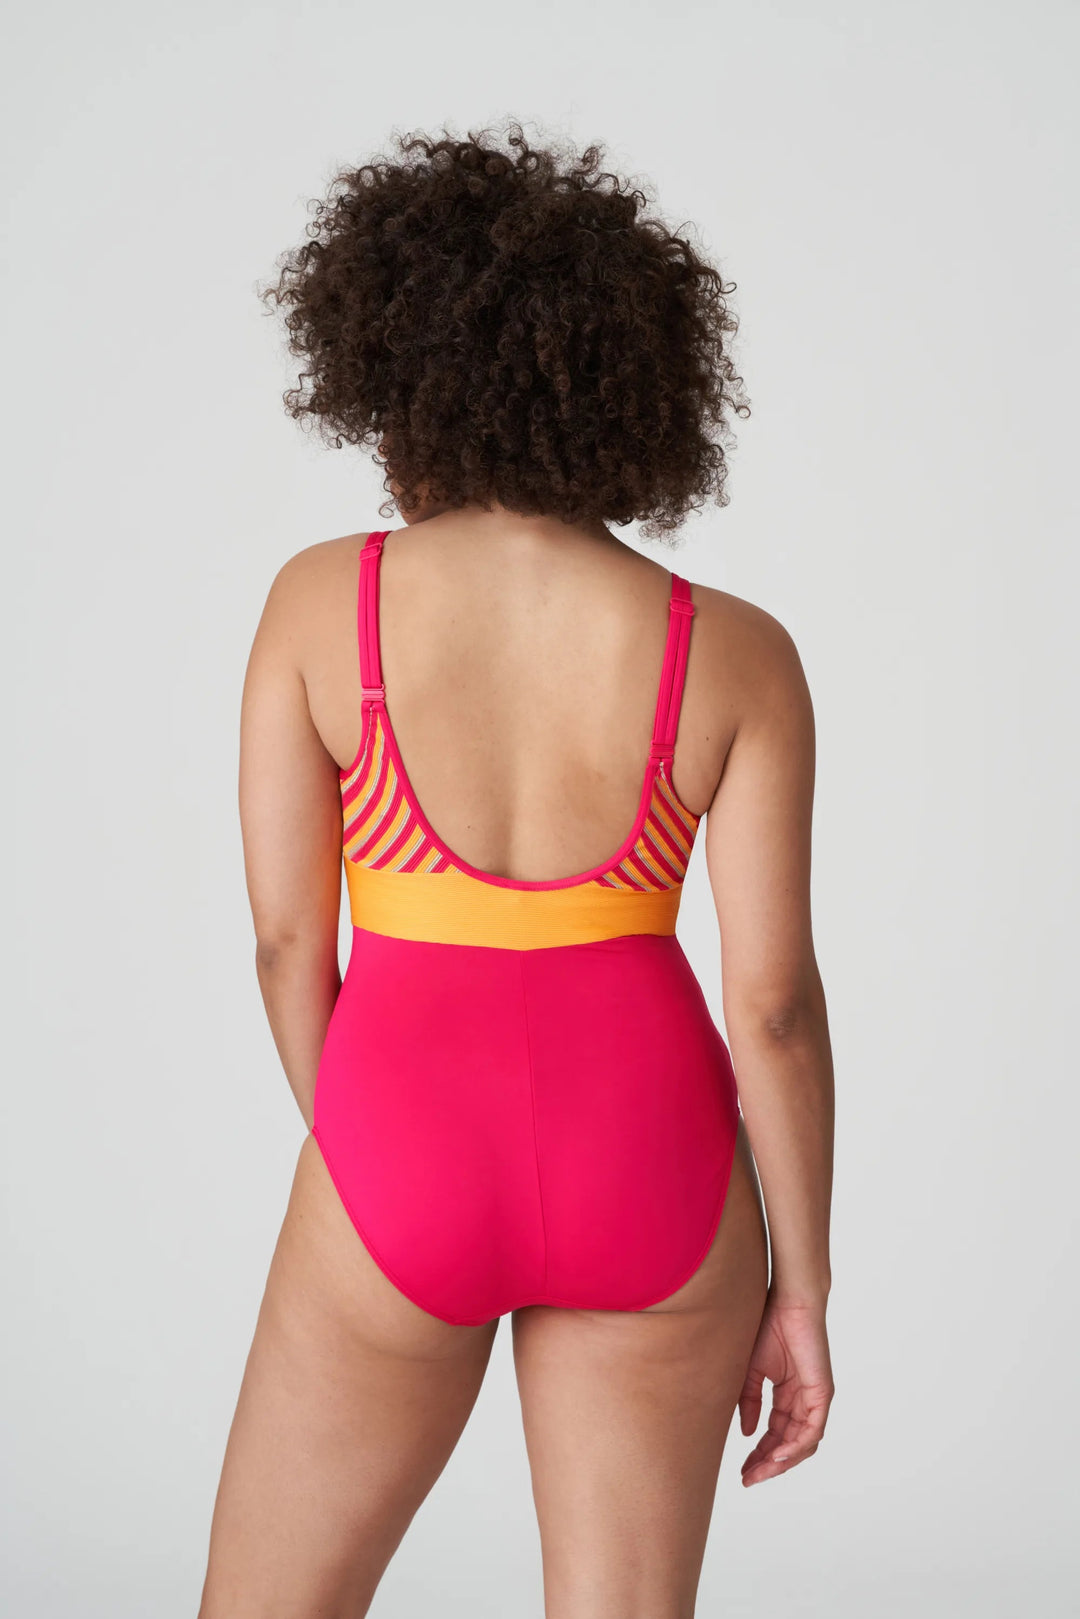 PrimaDonna Swimwear La Concha 軟墊泳衣 Wireless - Mai Tai 軟墊泳衣 PrimaDonna Swimwear